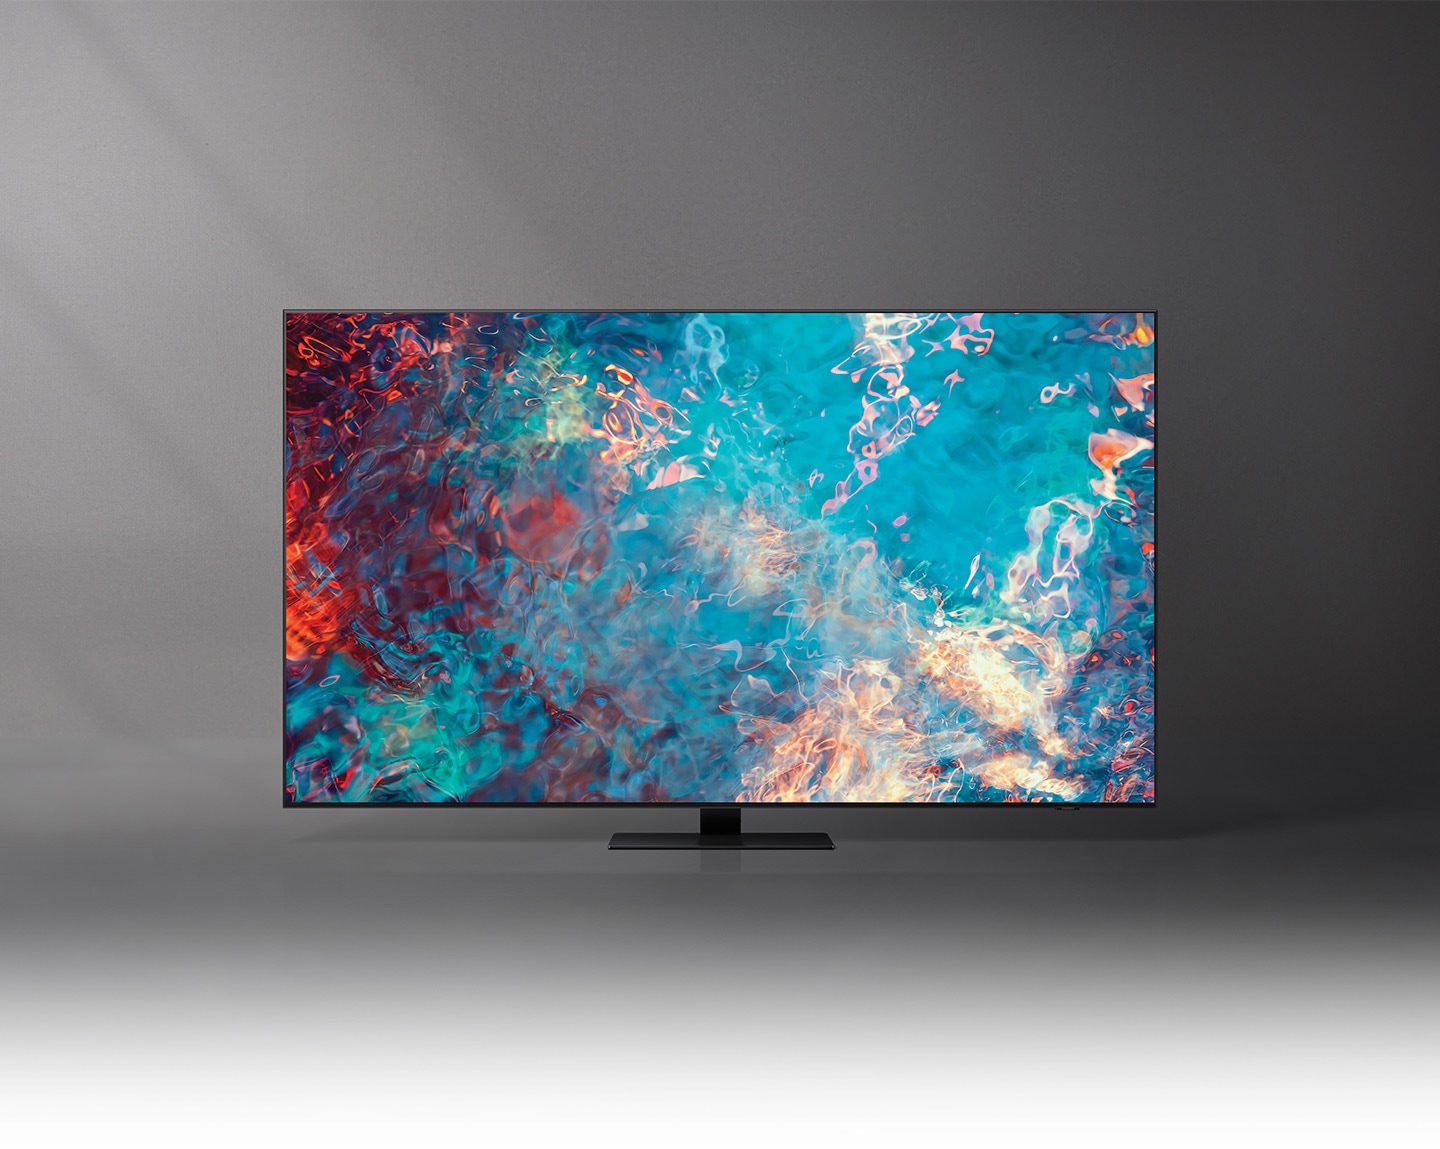 Poznaj nowe telewizory 4K Samsung Neo QLED - telewizor QN85A zachwyci Cię technologią Quantum Mini LED i skalowaniem do 4K dzięki sztucznej inteligencji